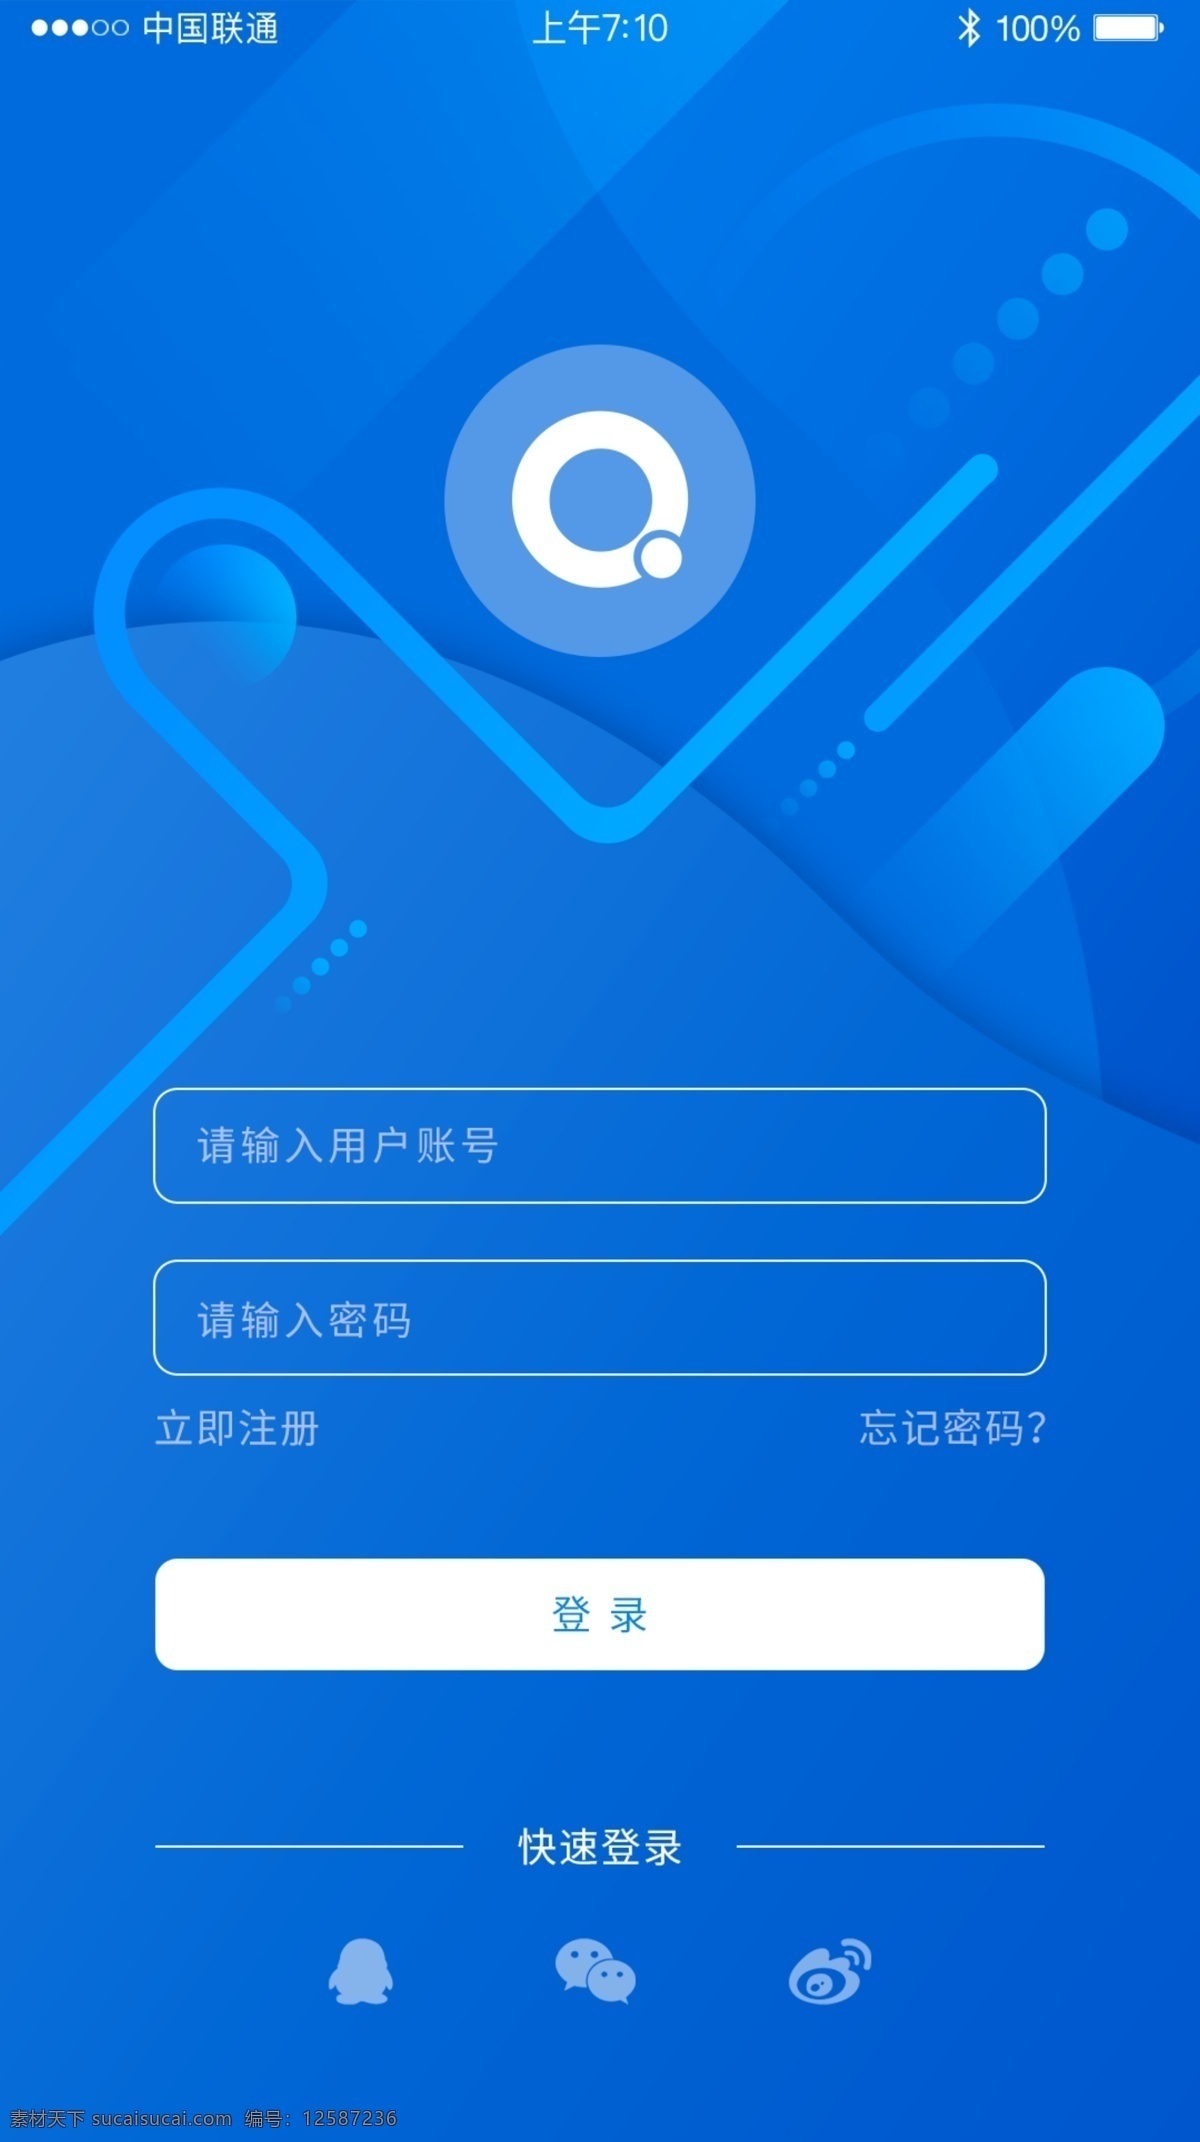 蓝色 简洁 app 登录 注册 页面 模板 科技